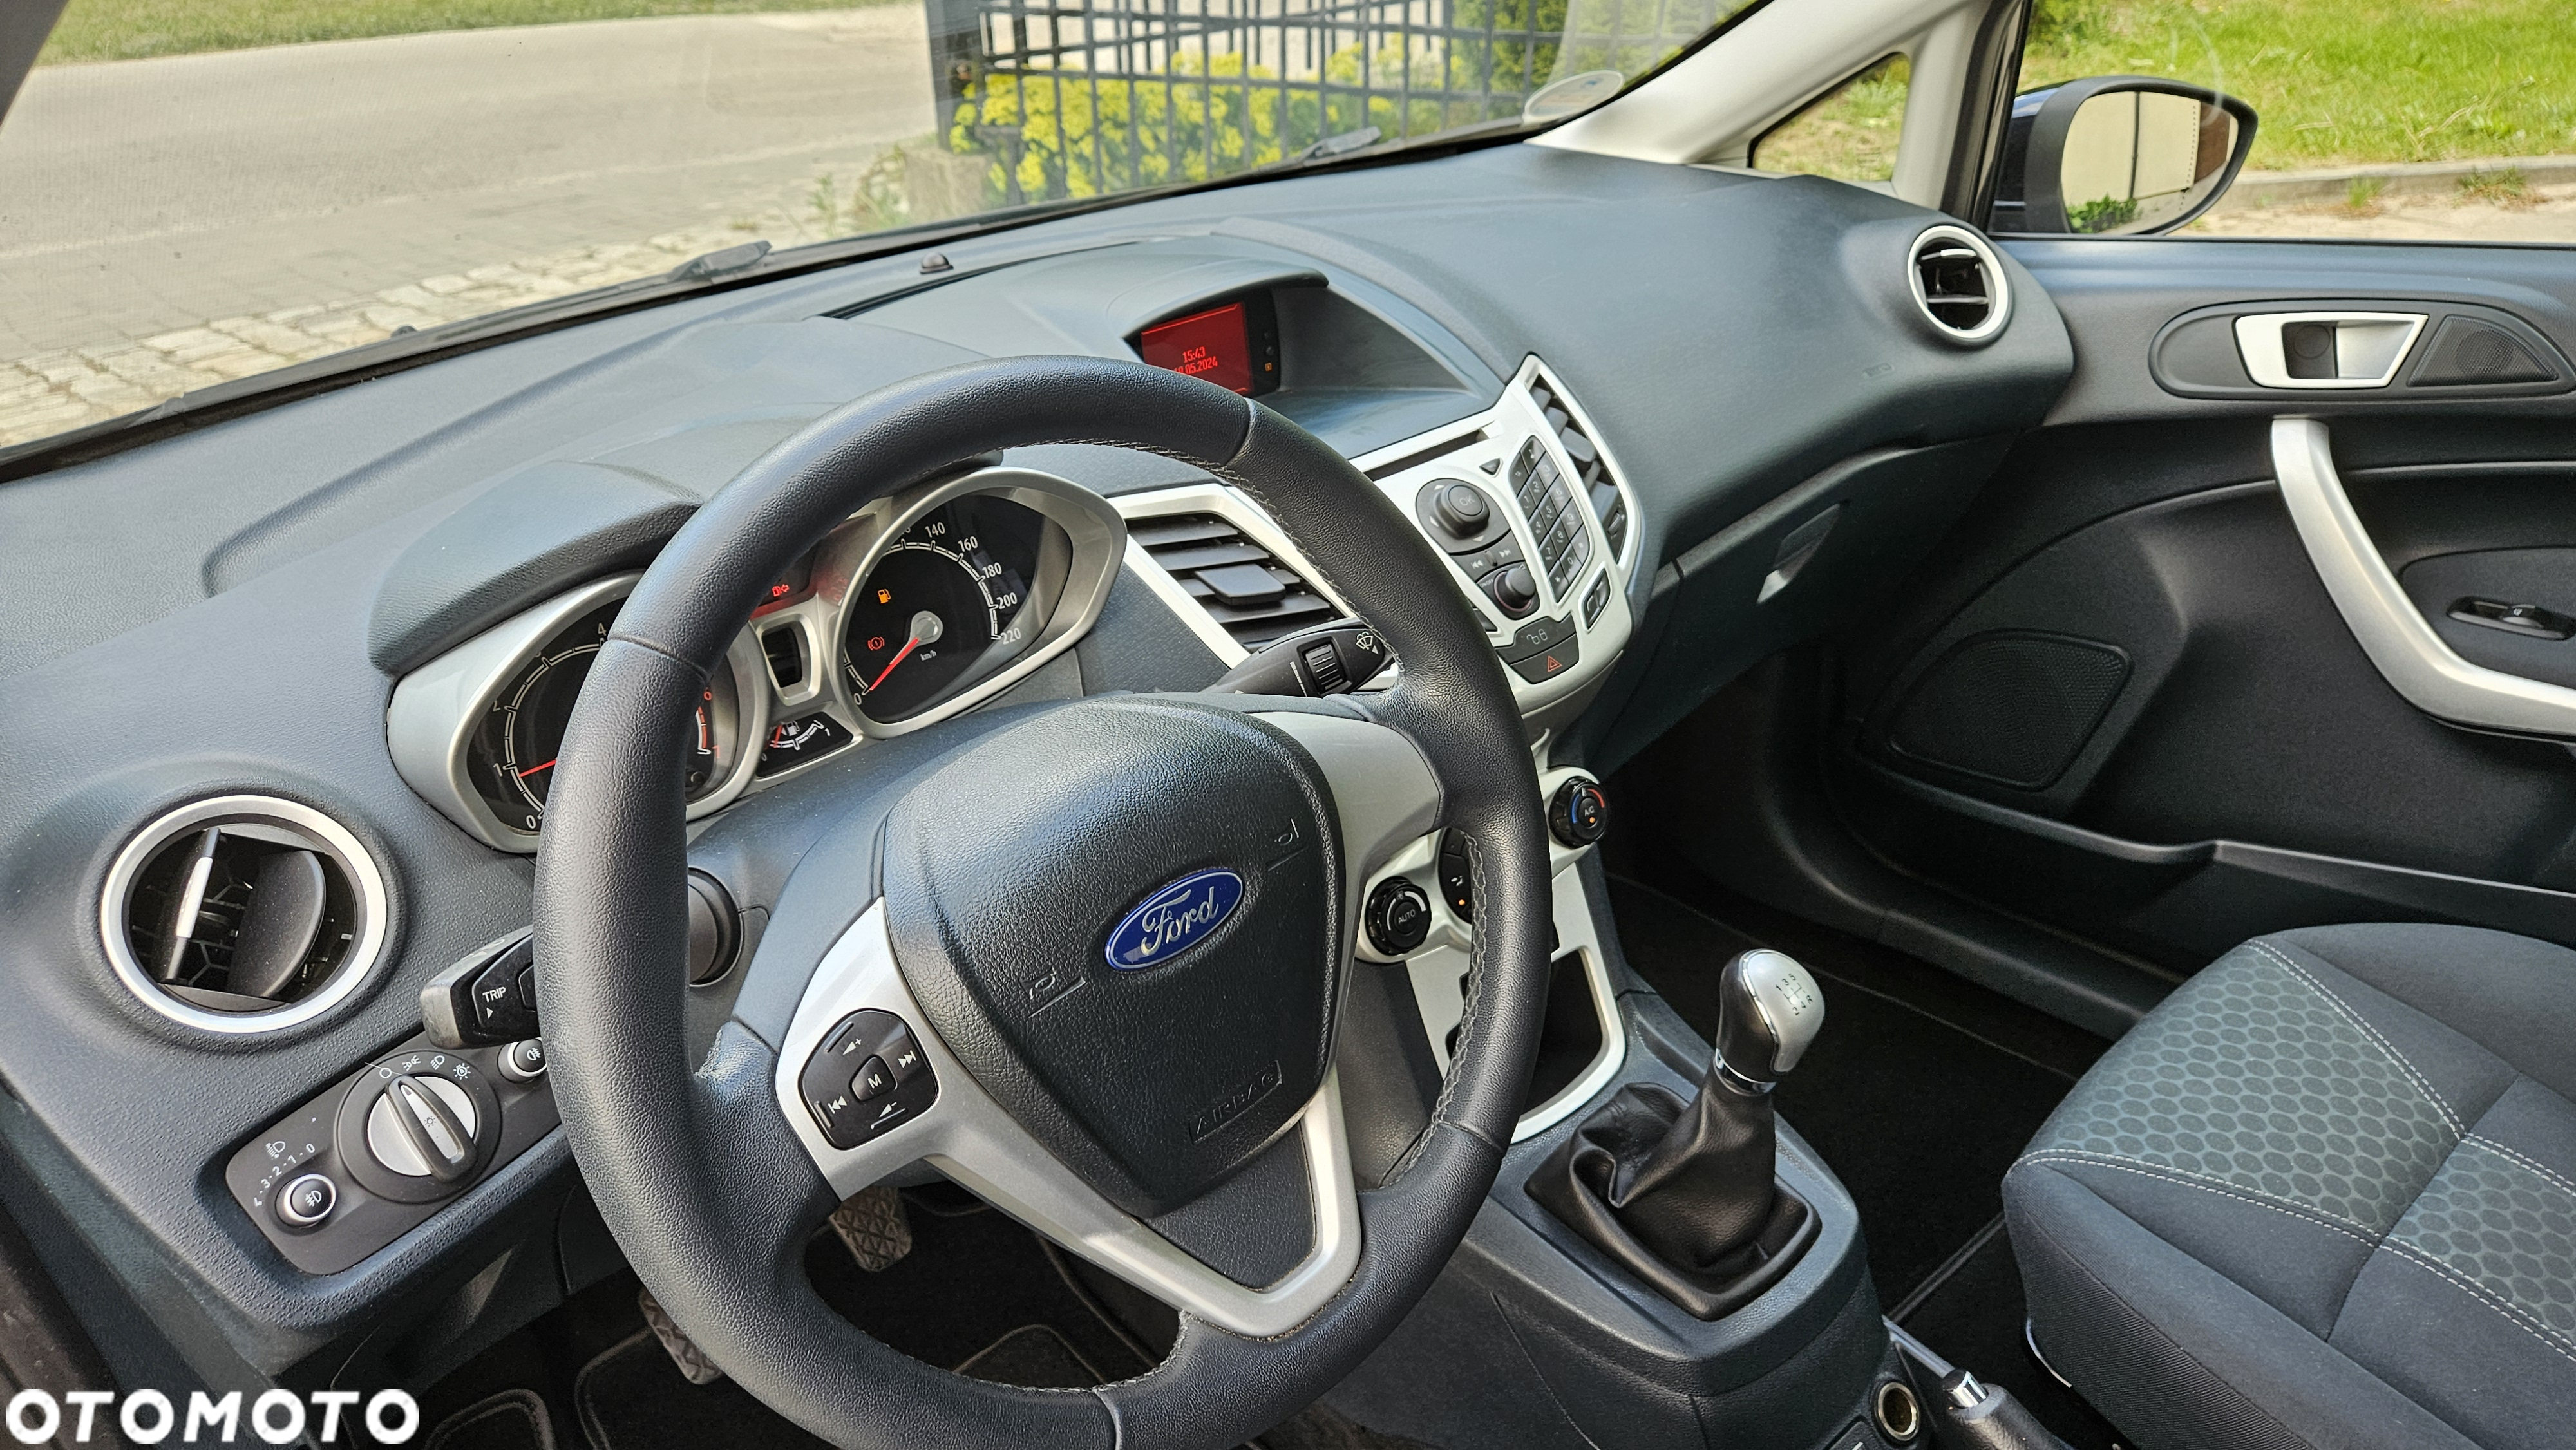 Ford Fiesta 1.4 Titanium EU5 - 26